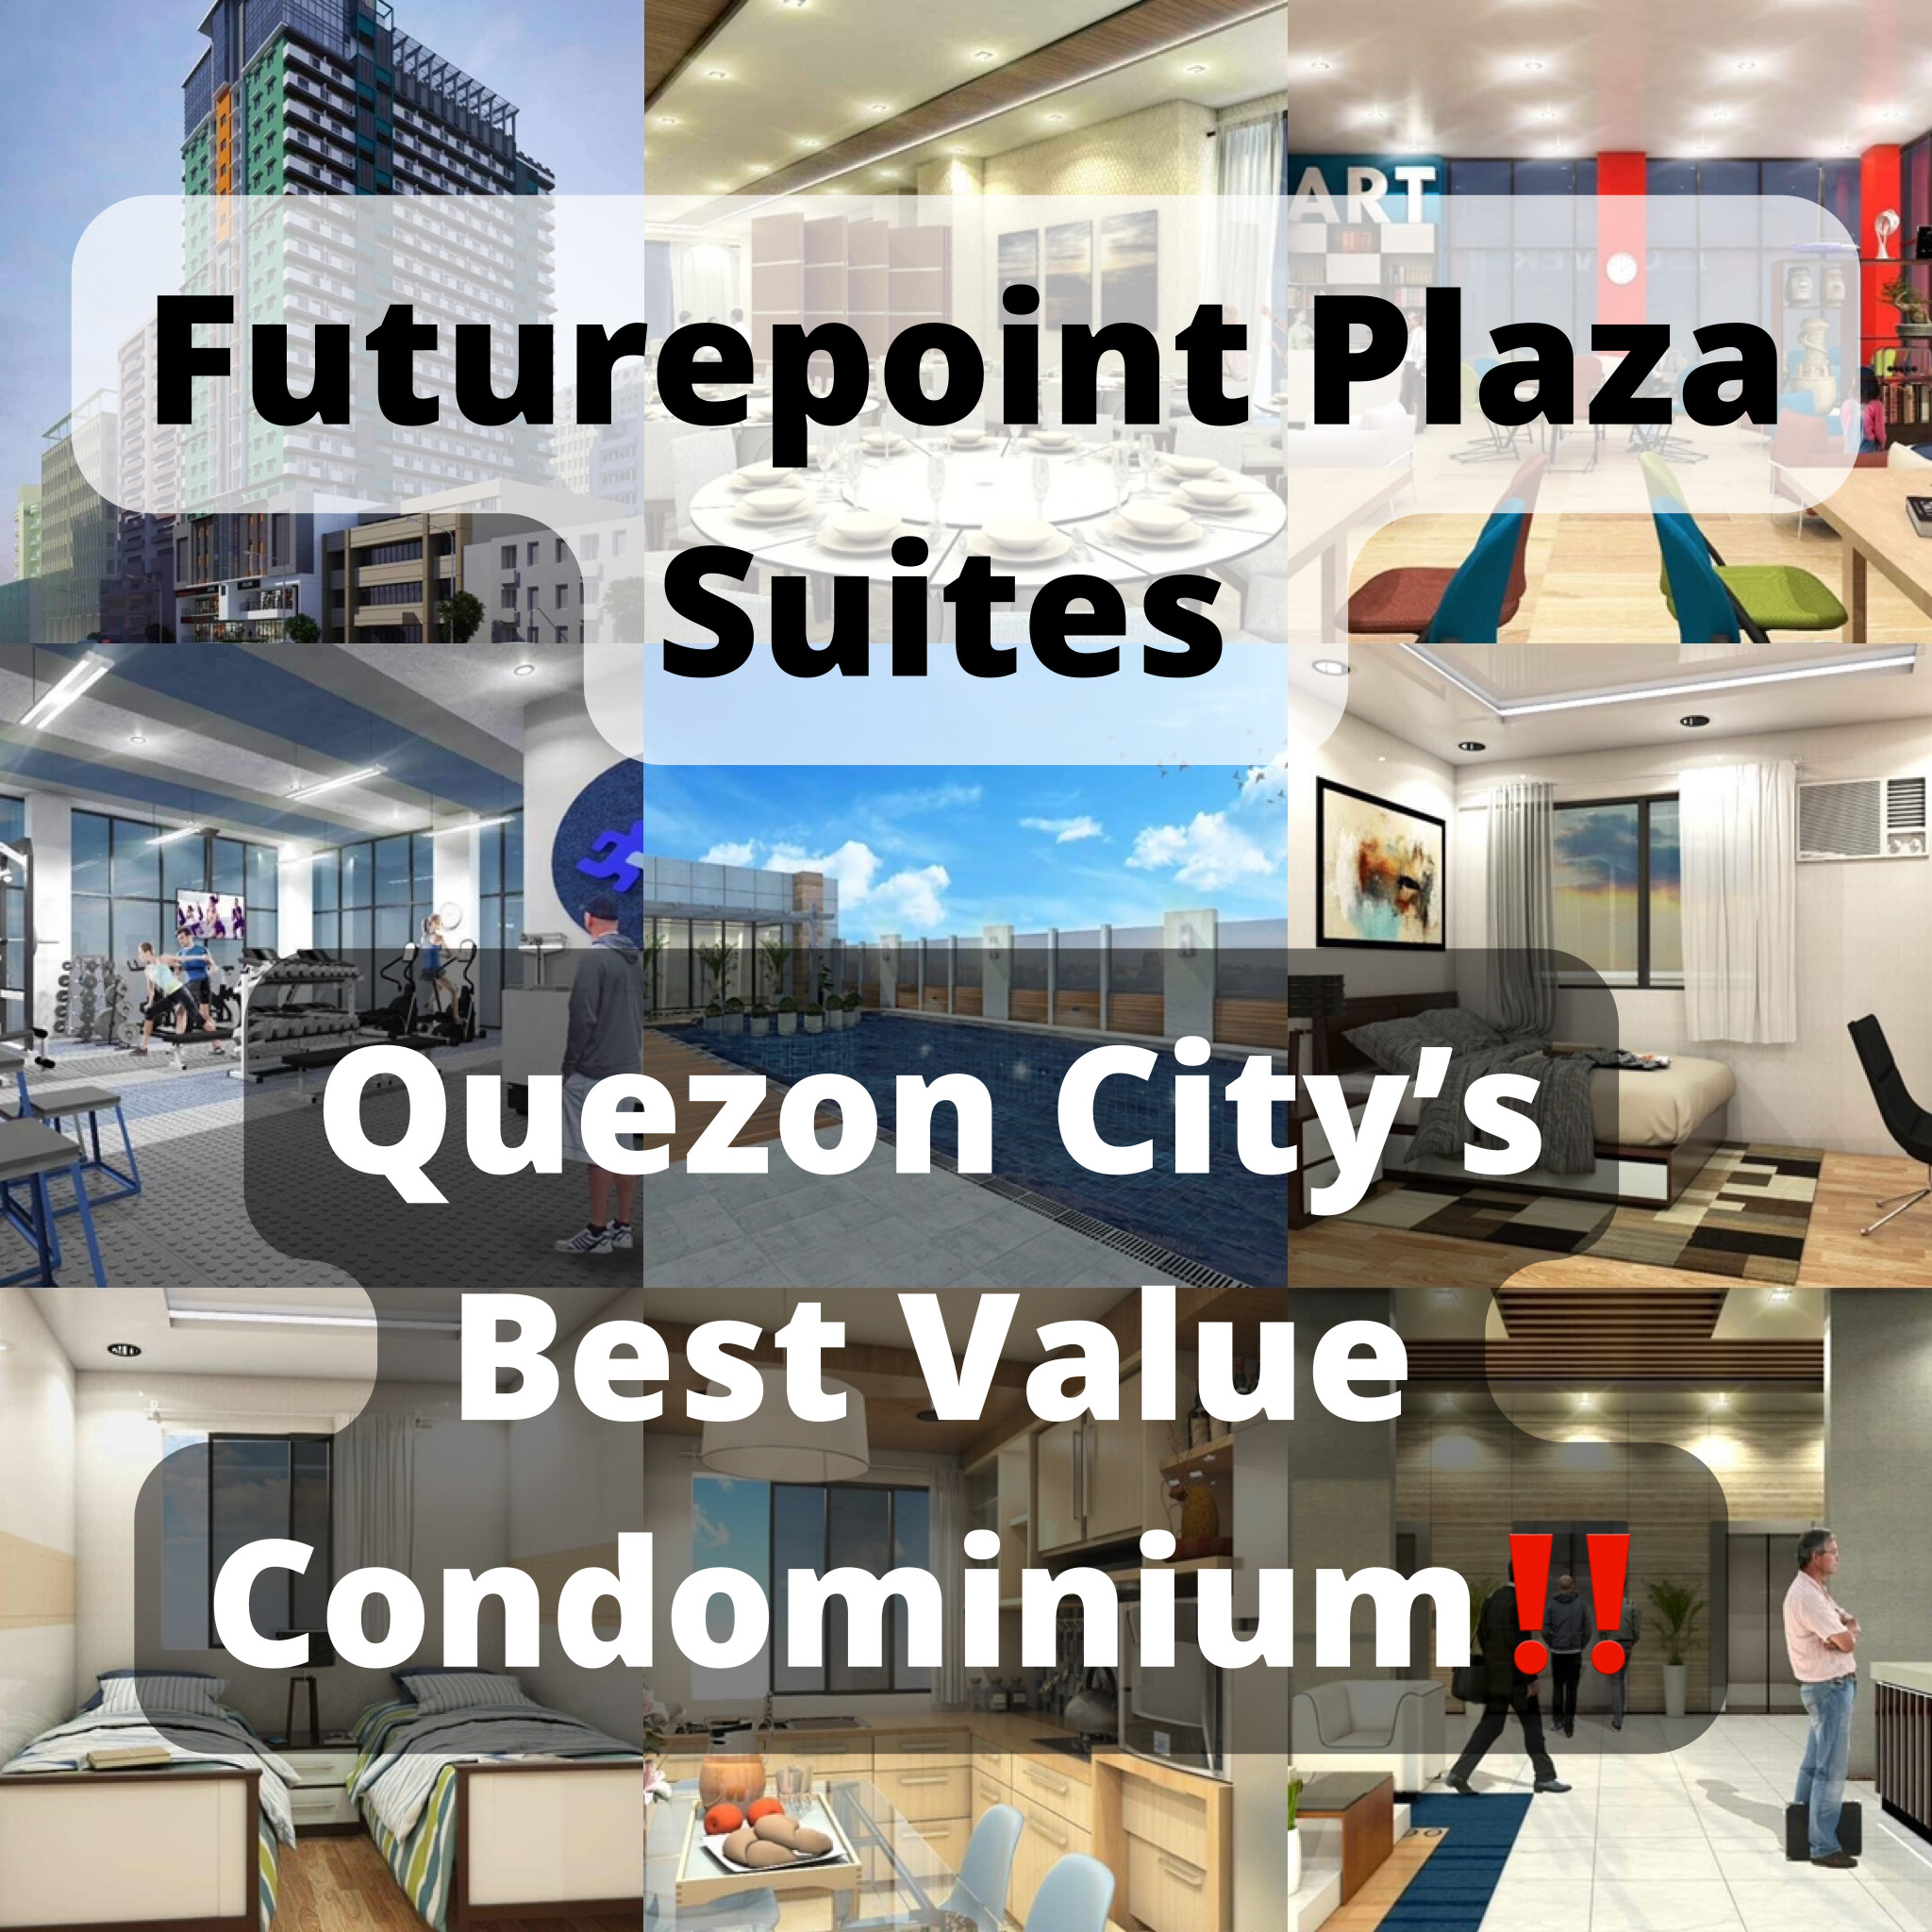 Quezon City’s Best Value Condominium‼️